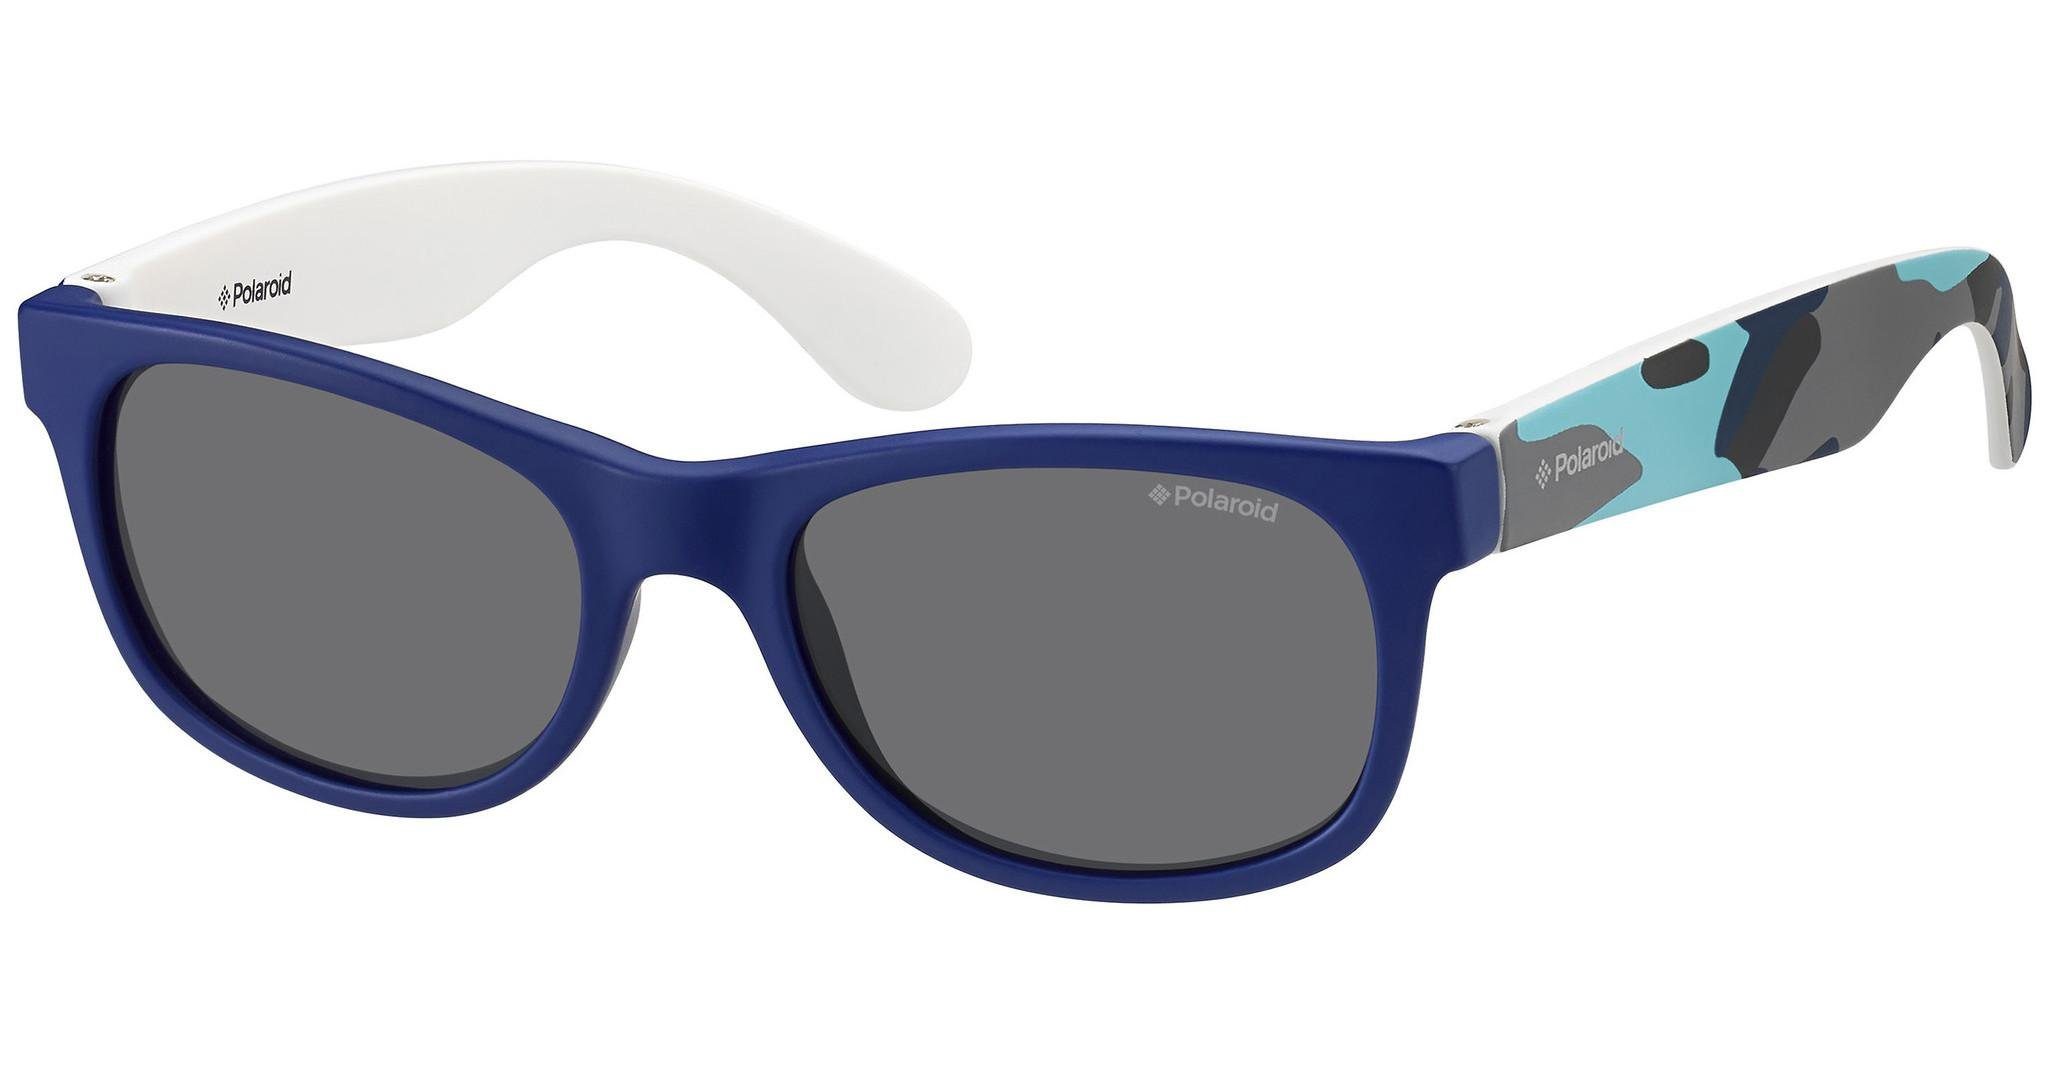 Sonnenbrille Polaroid P0300 blau